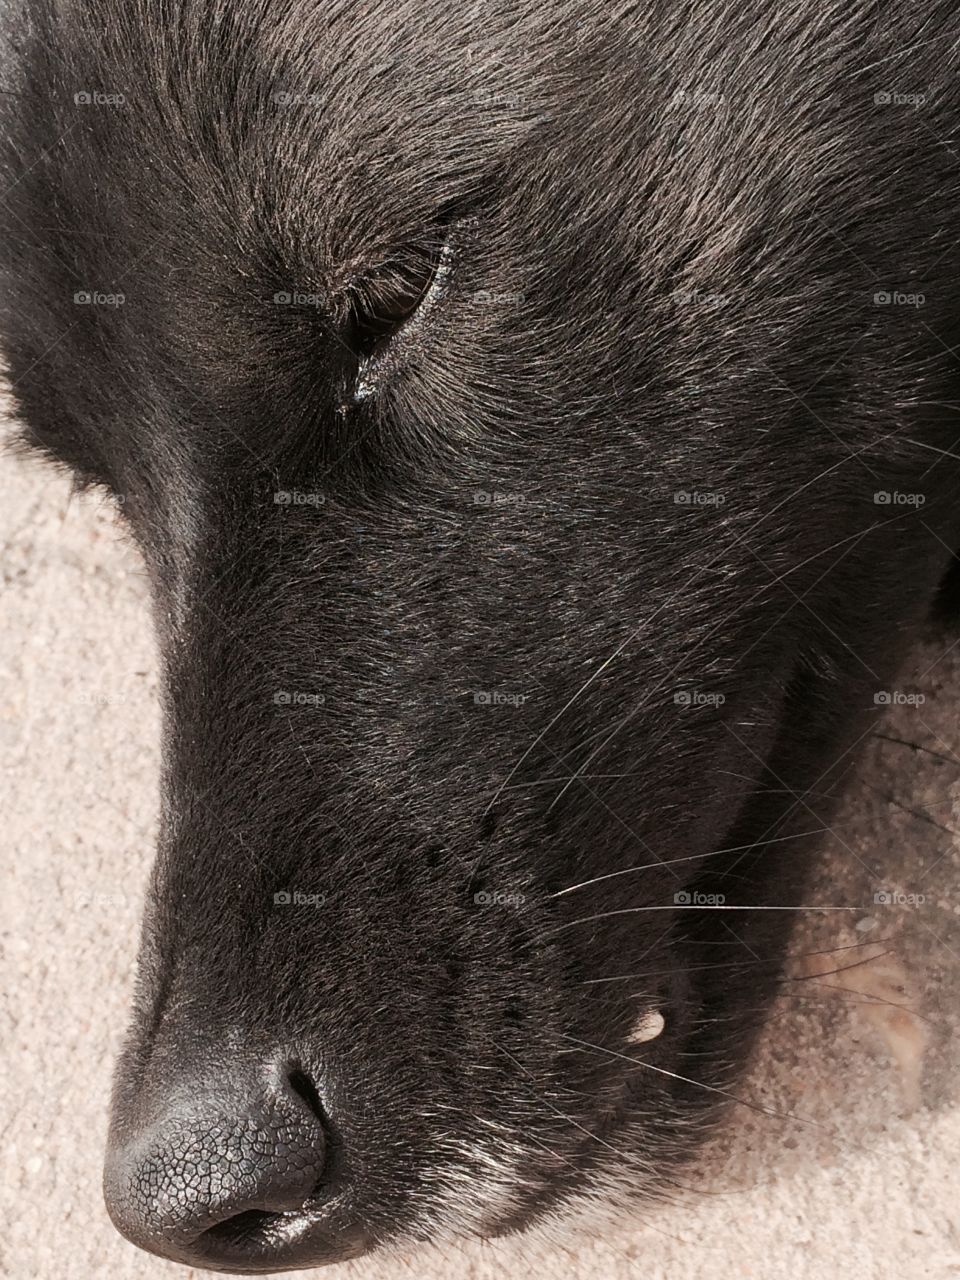 Face black dog